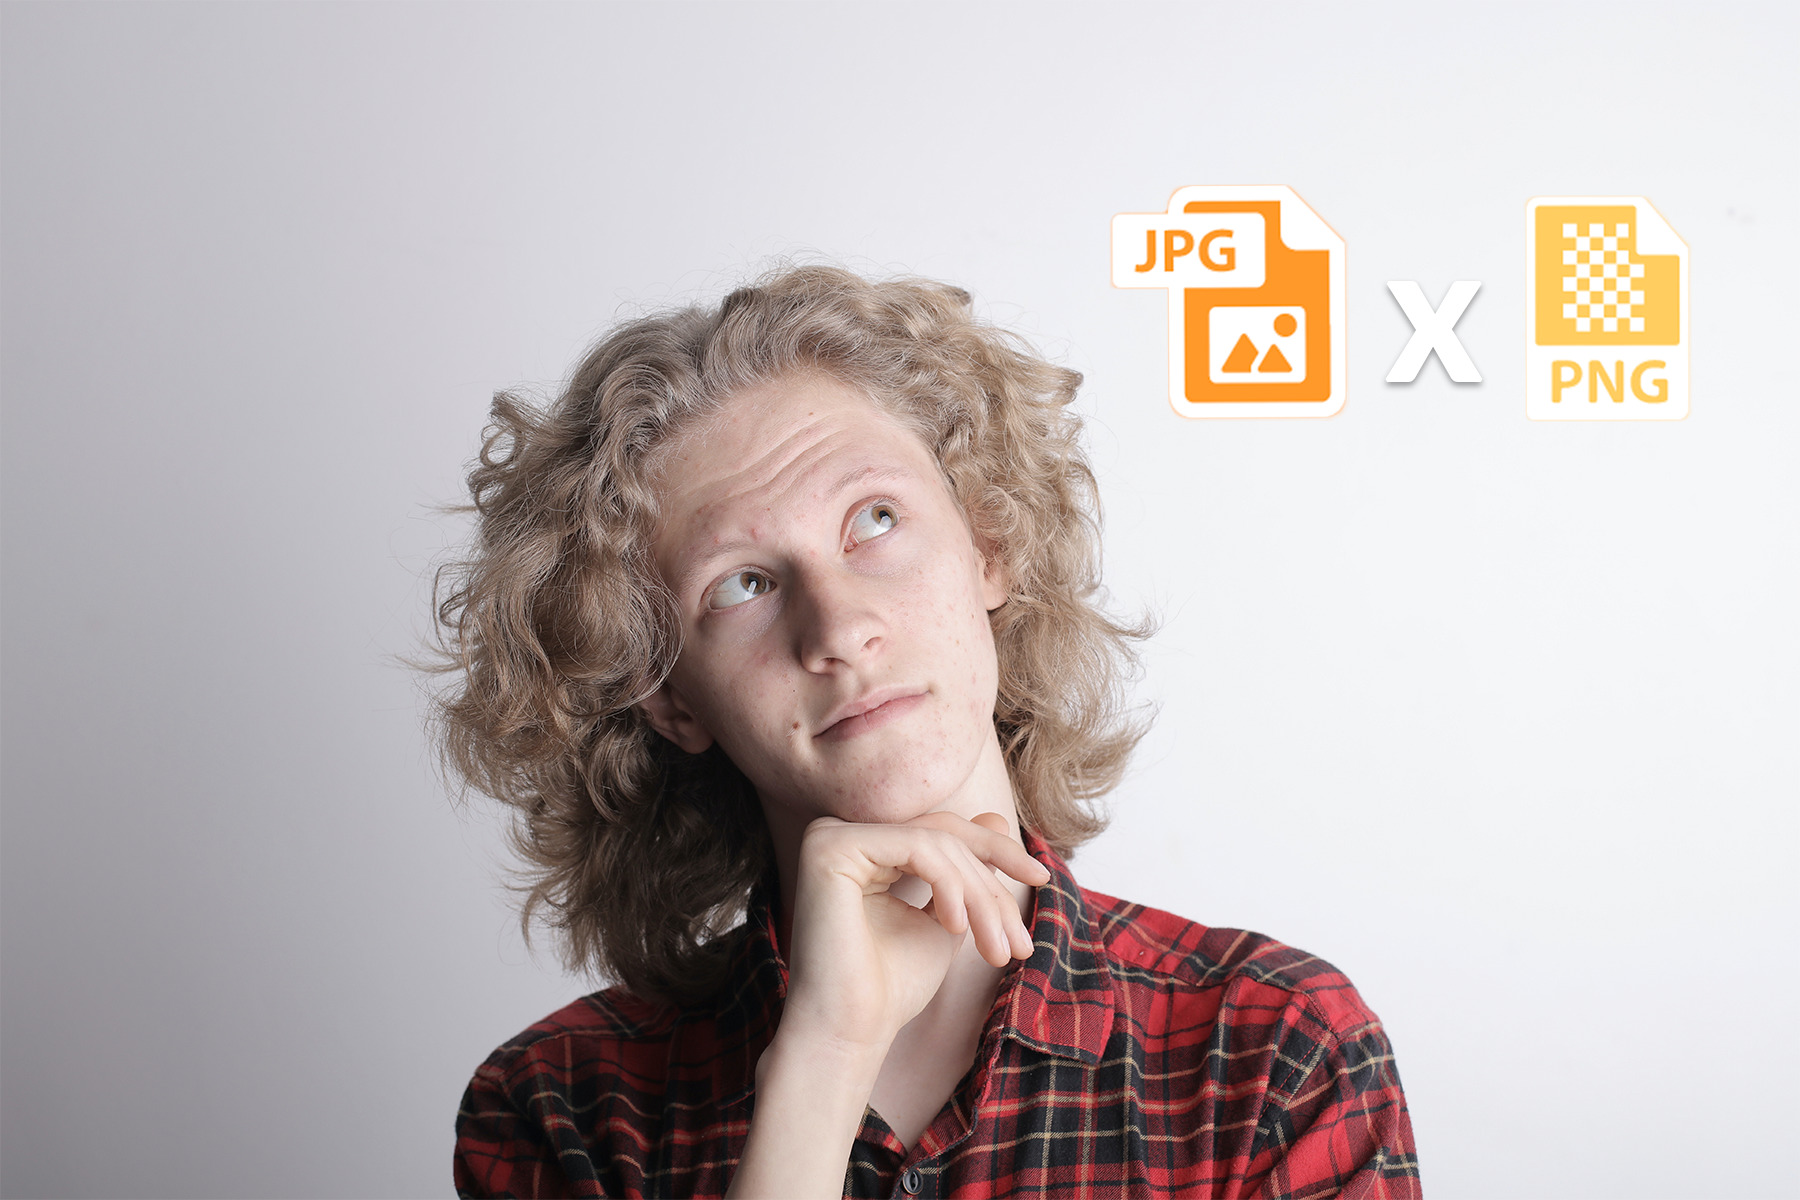 JPEG ou PNG: Vantagens e desvantagens dos dois formatos de imagens